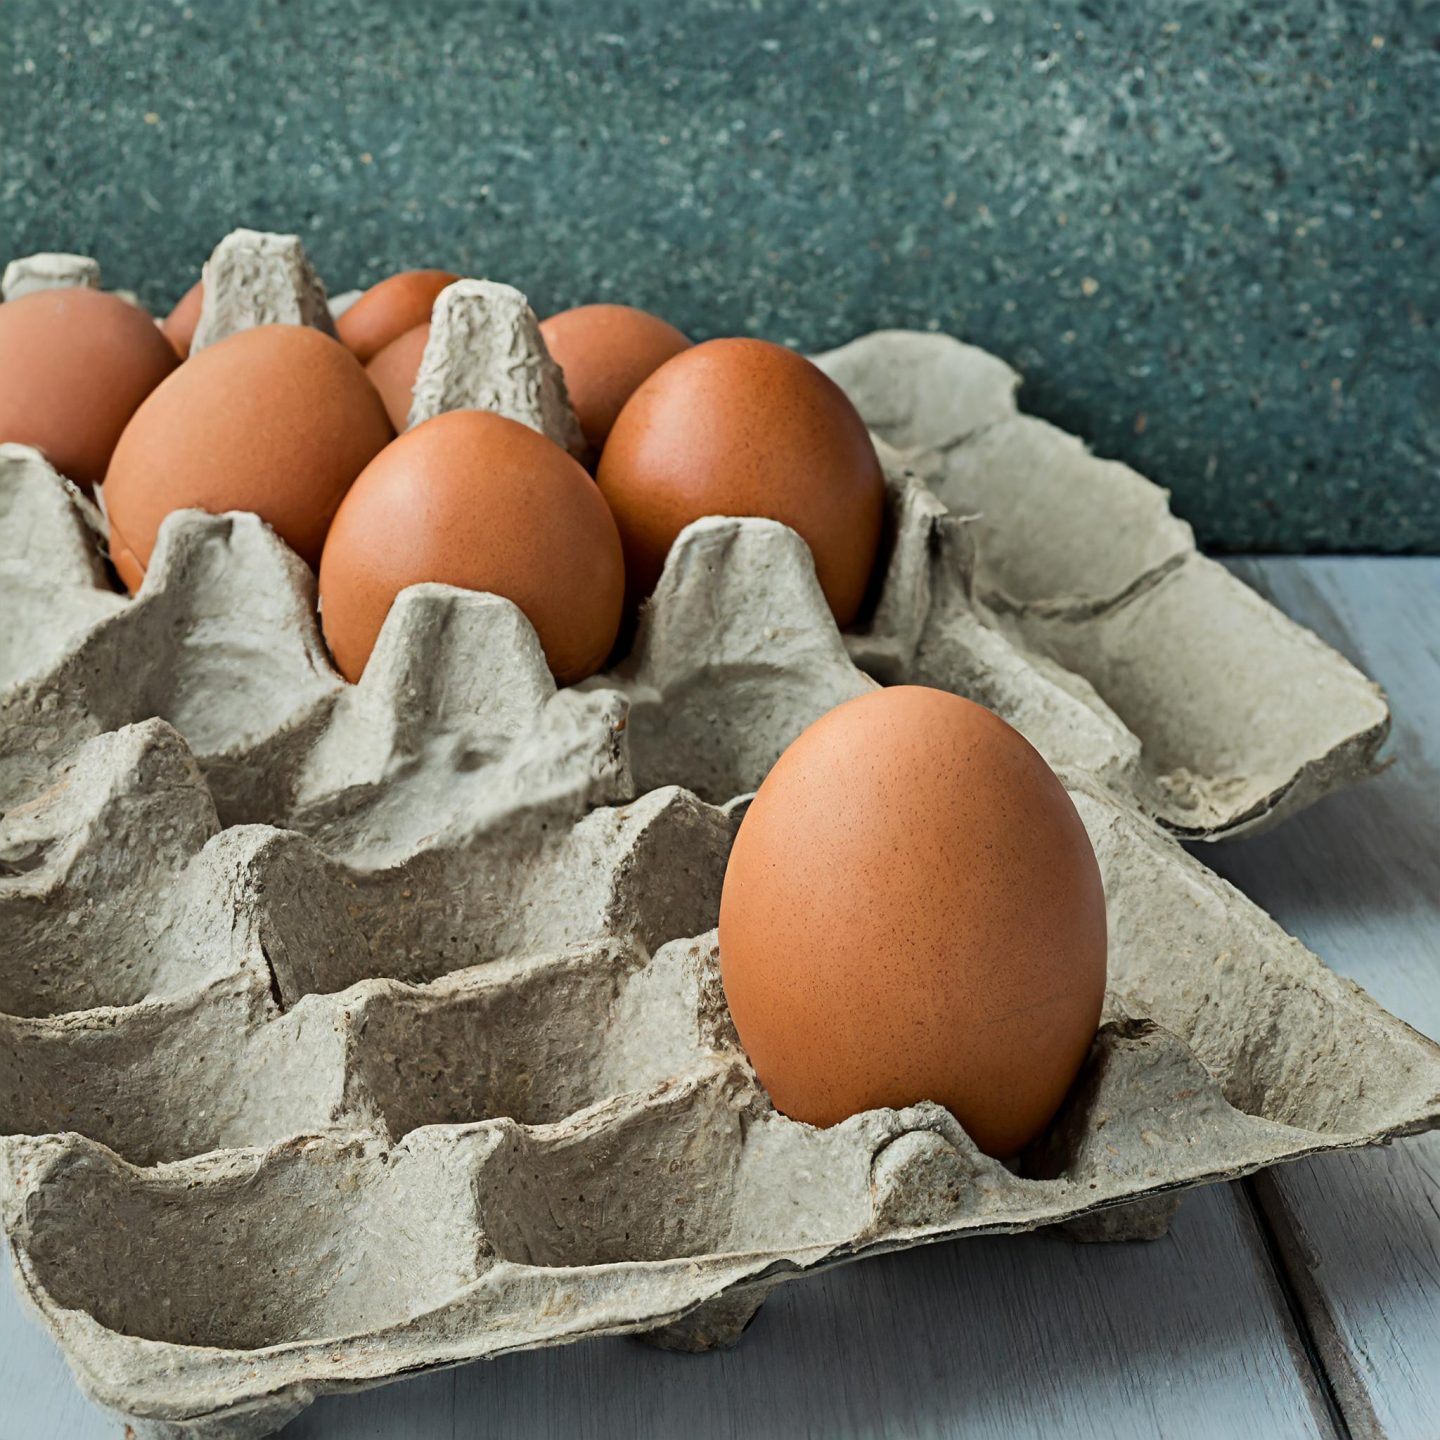 Wieviel Eier sind eigentlich gesund? Ich gebe Dir fachkundige Tipps, wie Du mit den Experten-Empfehlungen von einem Ei pro Woche umgehen kannst.Foto: Maschinell erstellt mit Firefly 